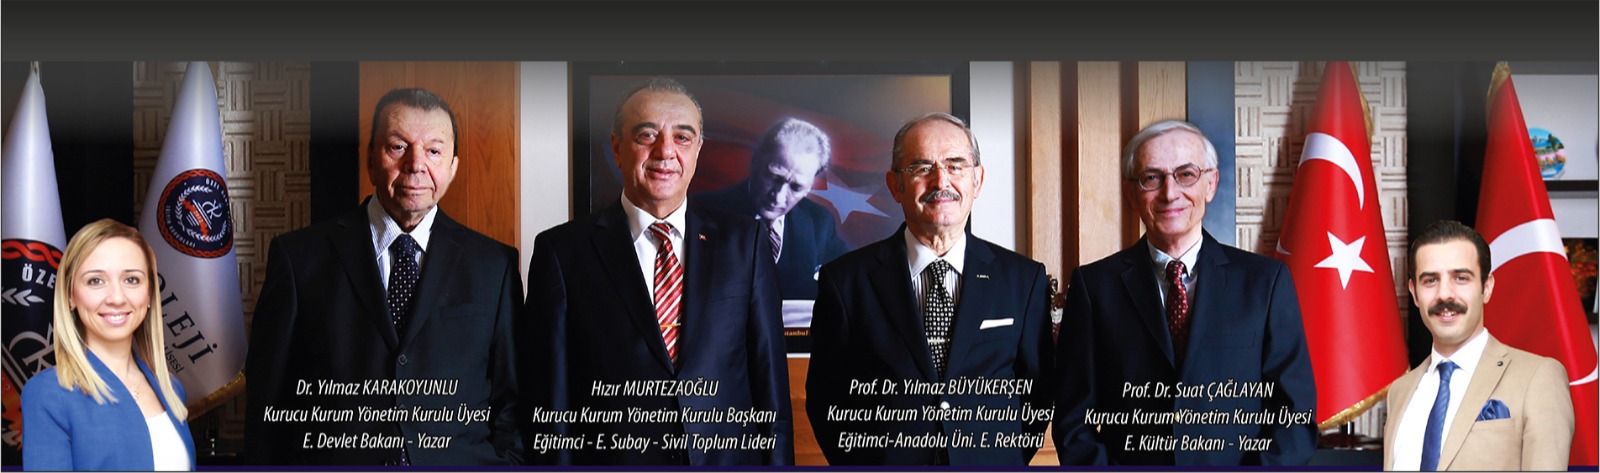 İzmir Özel Kent Koleji Yönetim Kurulu